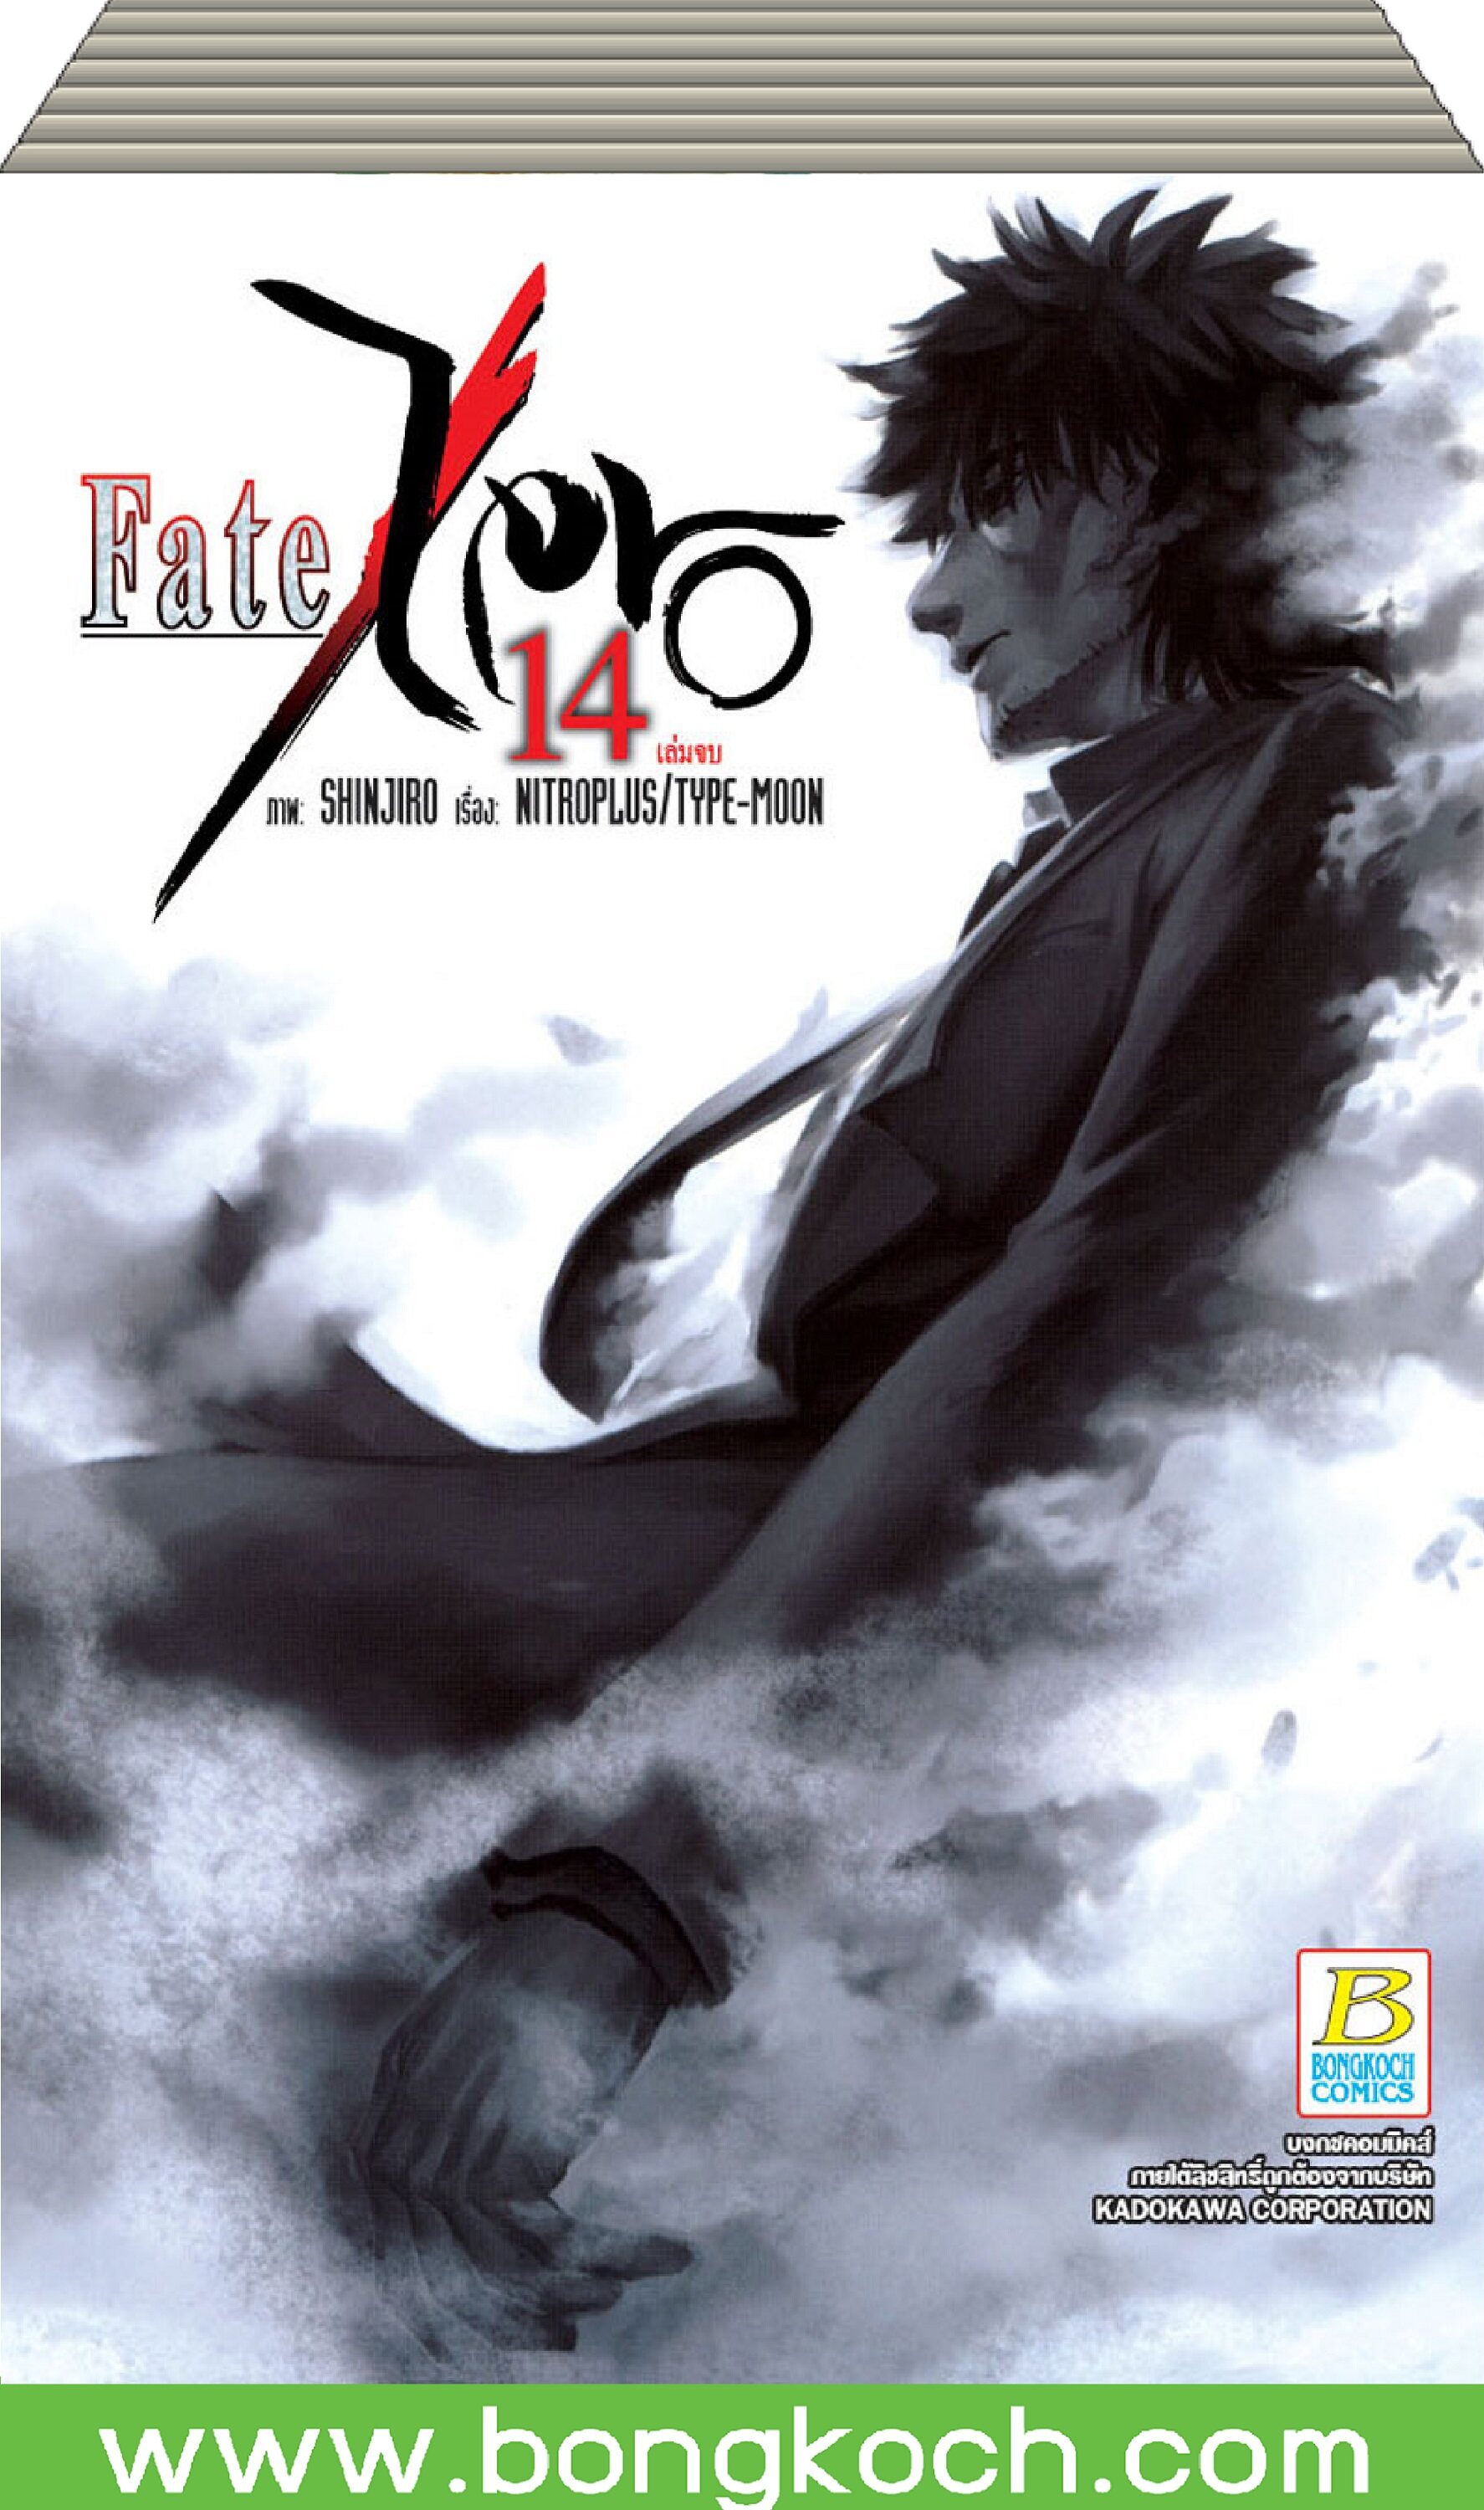 ชื่อหนังสือ Fate/Zero เล่ม 1-14 (จบ) ประเภท การ์ตูน ญี่ปุ่น บงกช bongkoch